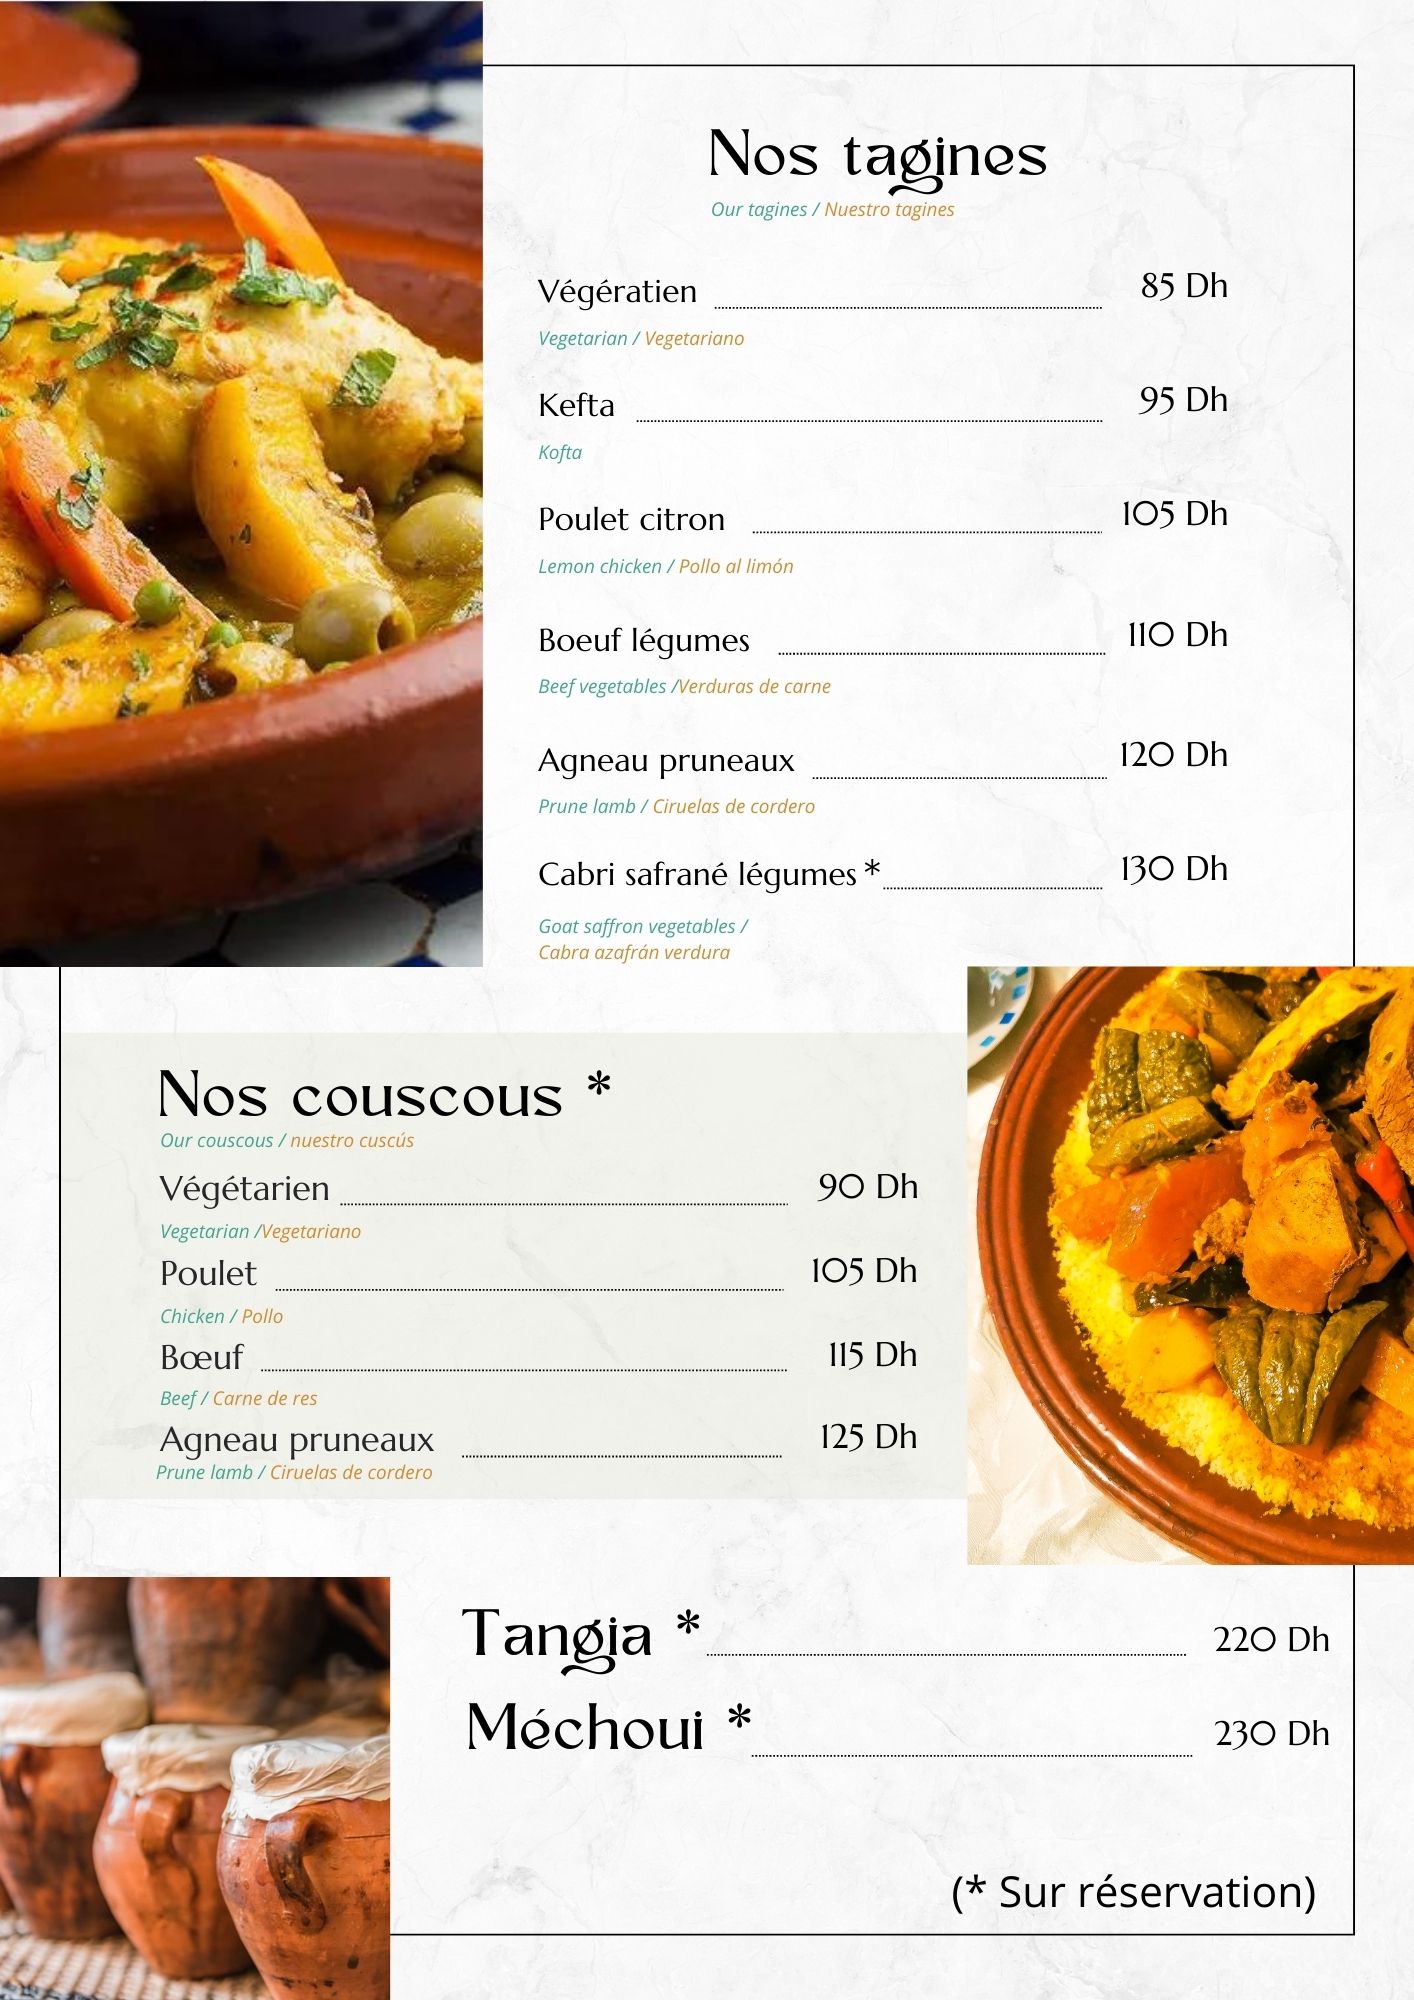 Menu du restaurant Aurocher montrant une variété de plats traditionnels marocains, y compris tagines et couscous, avec des options sur réservation.